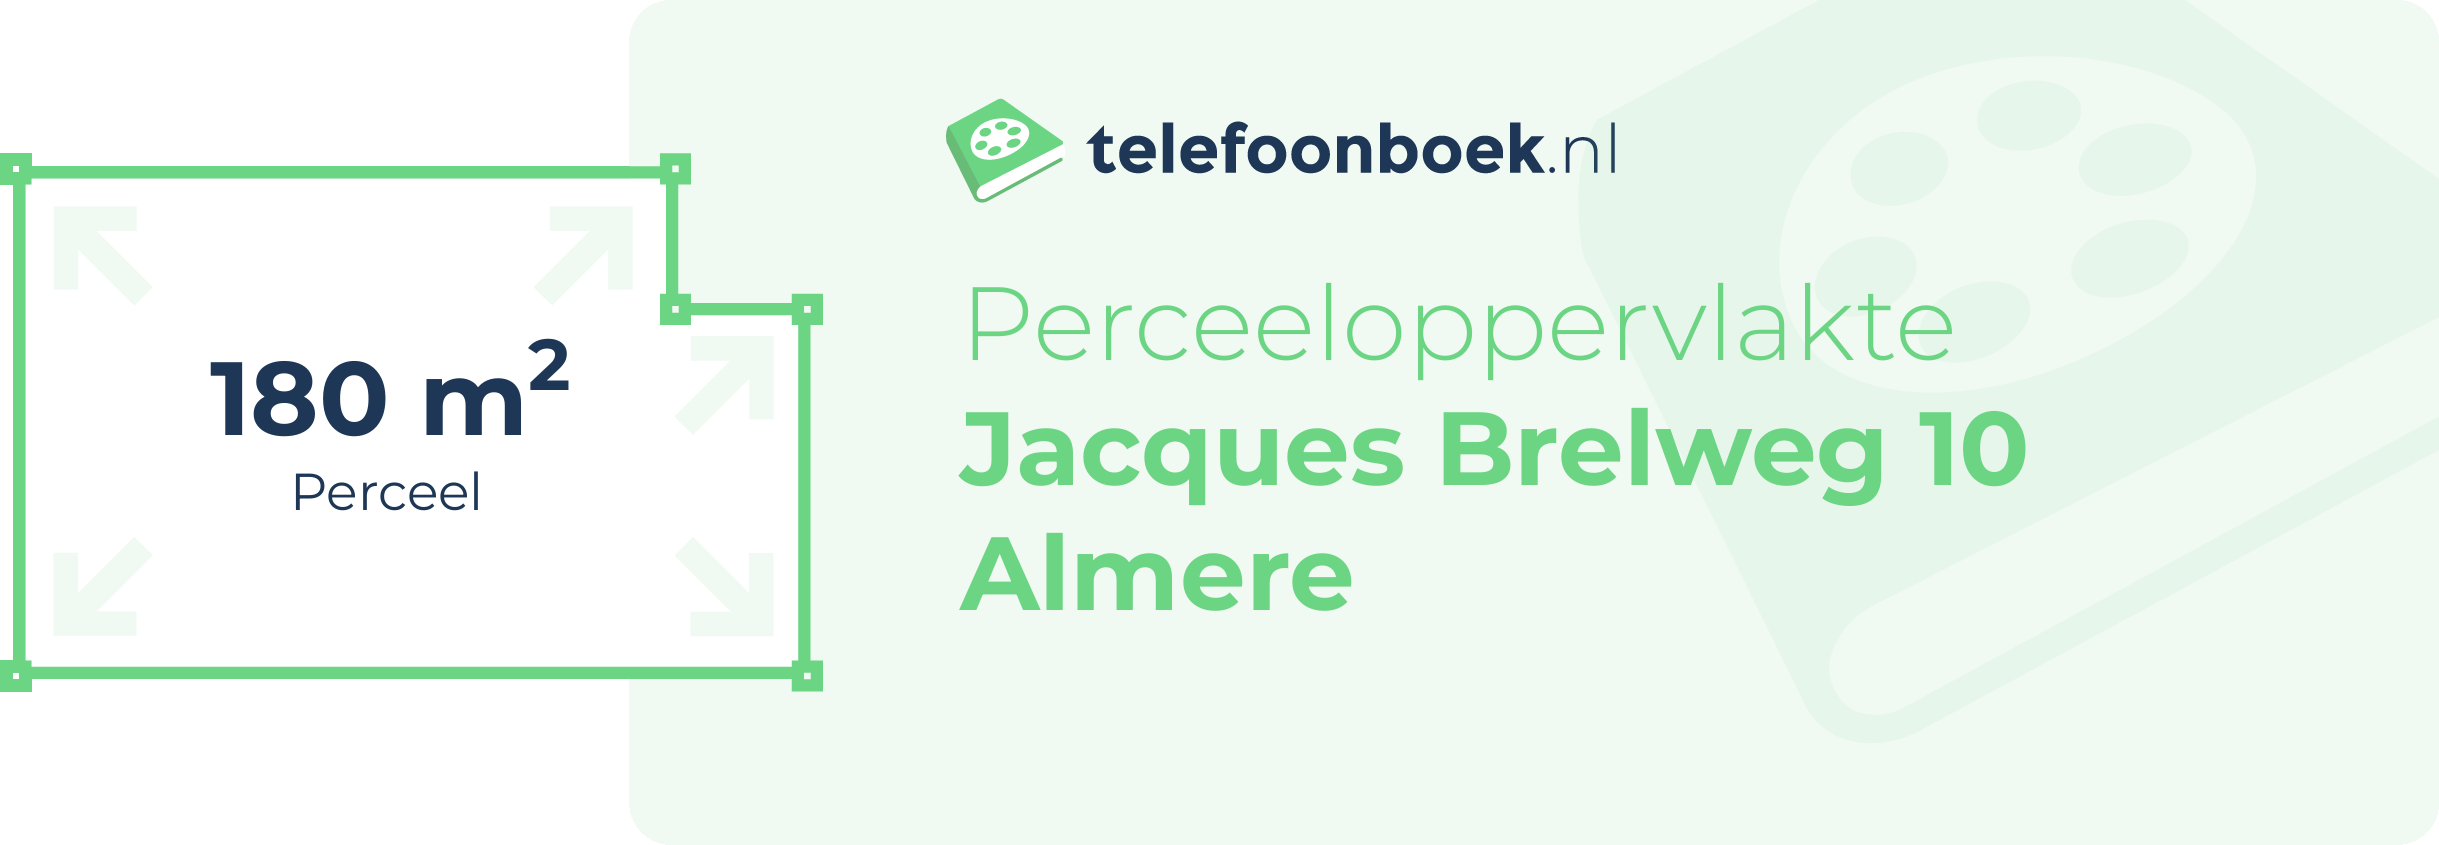 Perceeloppervlakte Jacques Brelweg 10 Almere